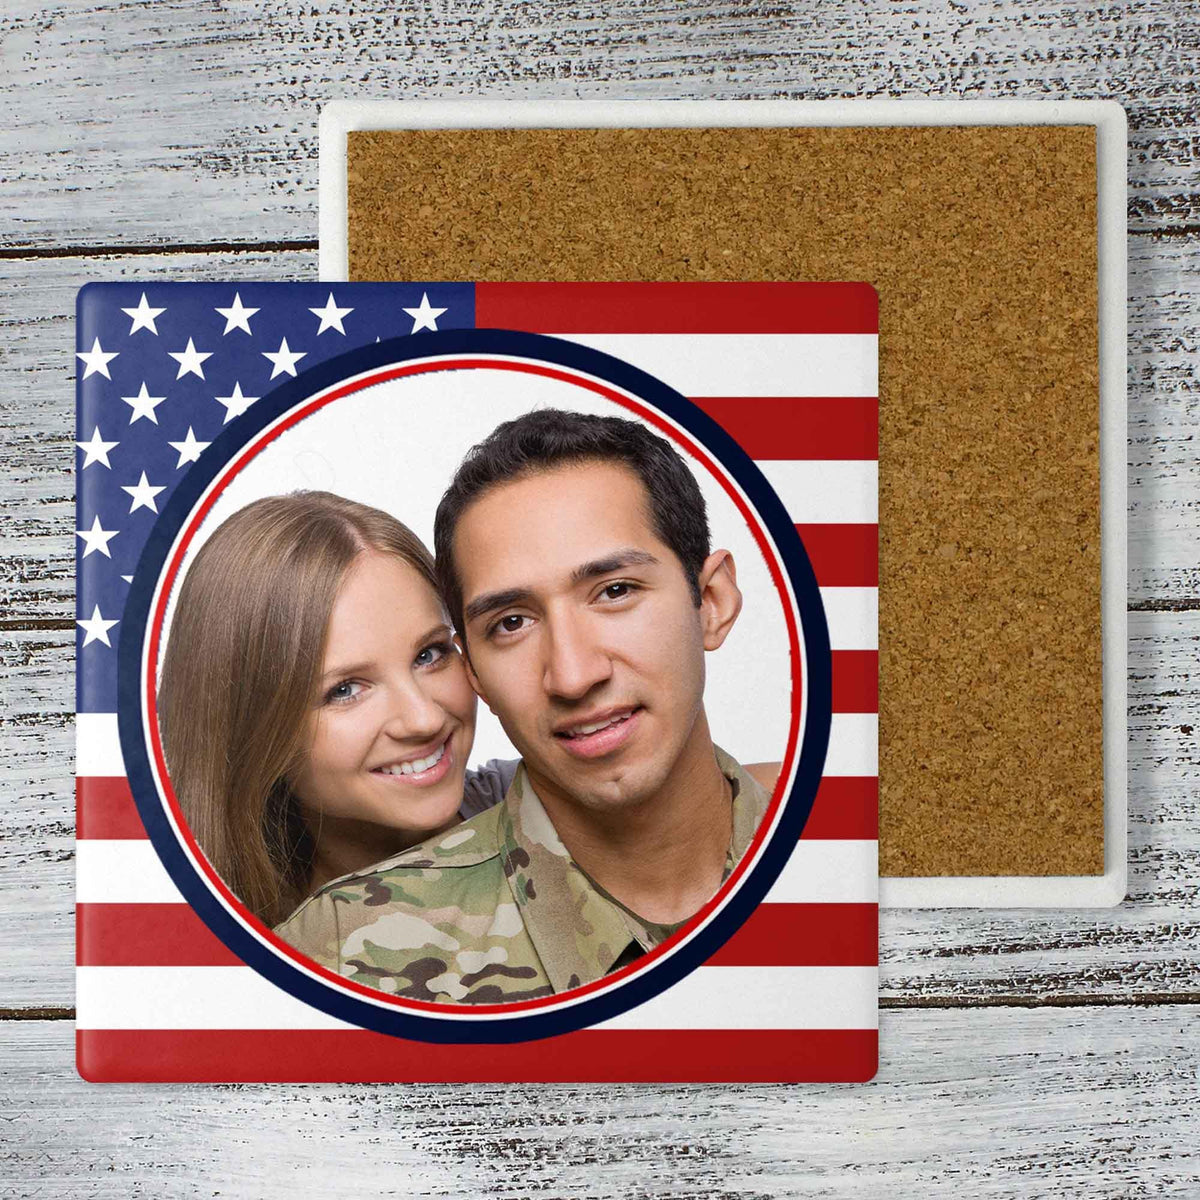 Personalized Coasters | Custom Stone Coaster Set | Flag Photo Frame | Set of 4